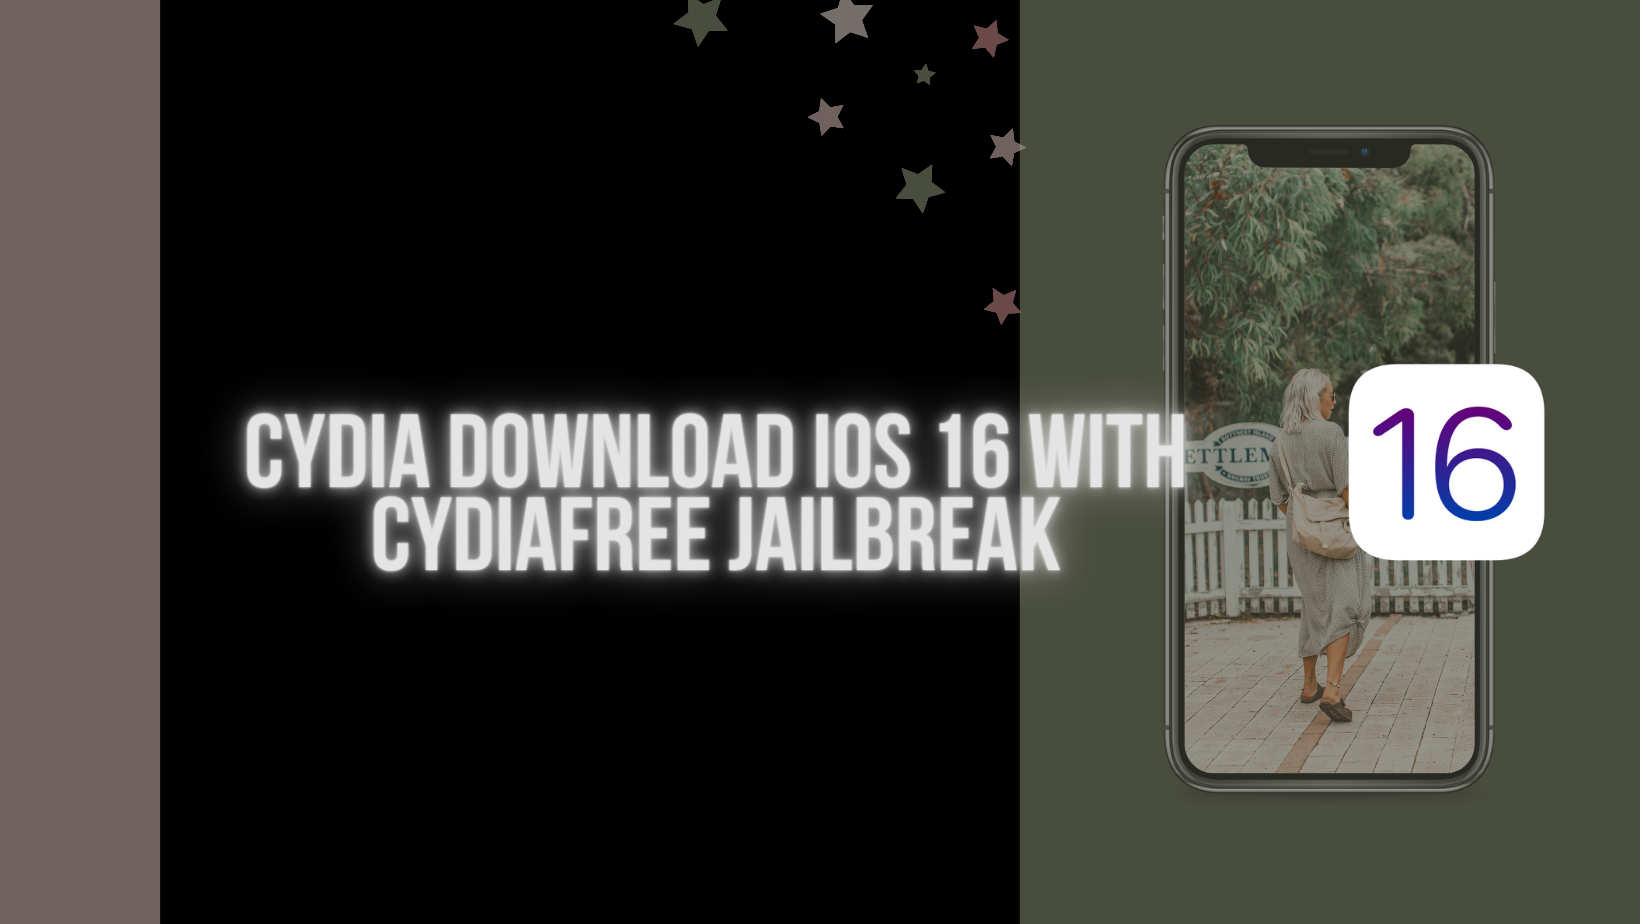 cydiafree download ios 16